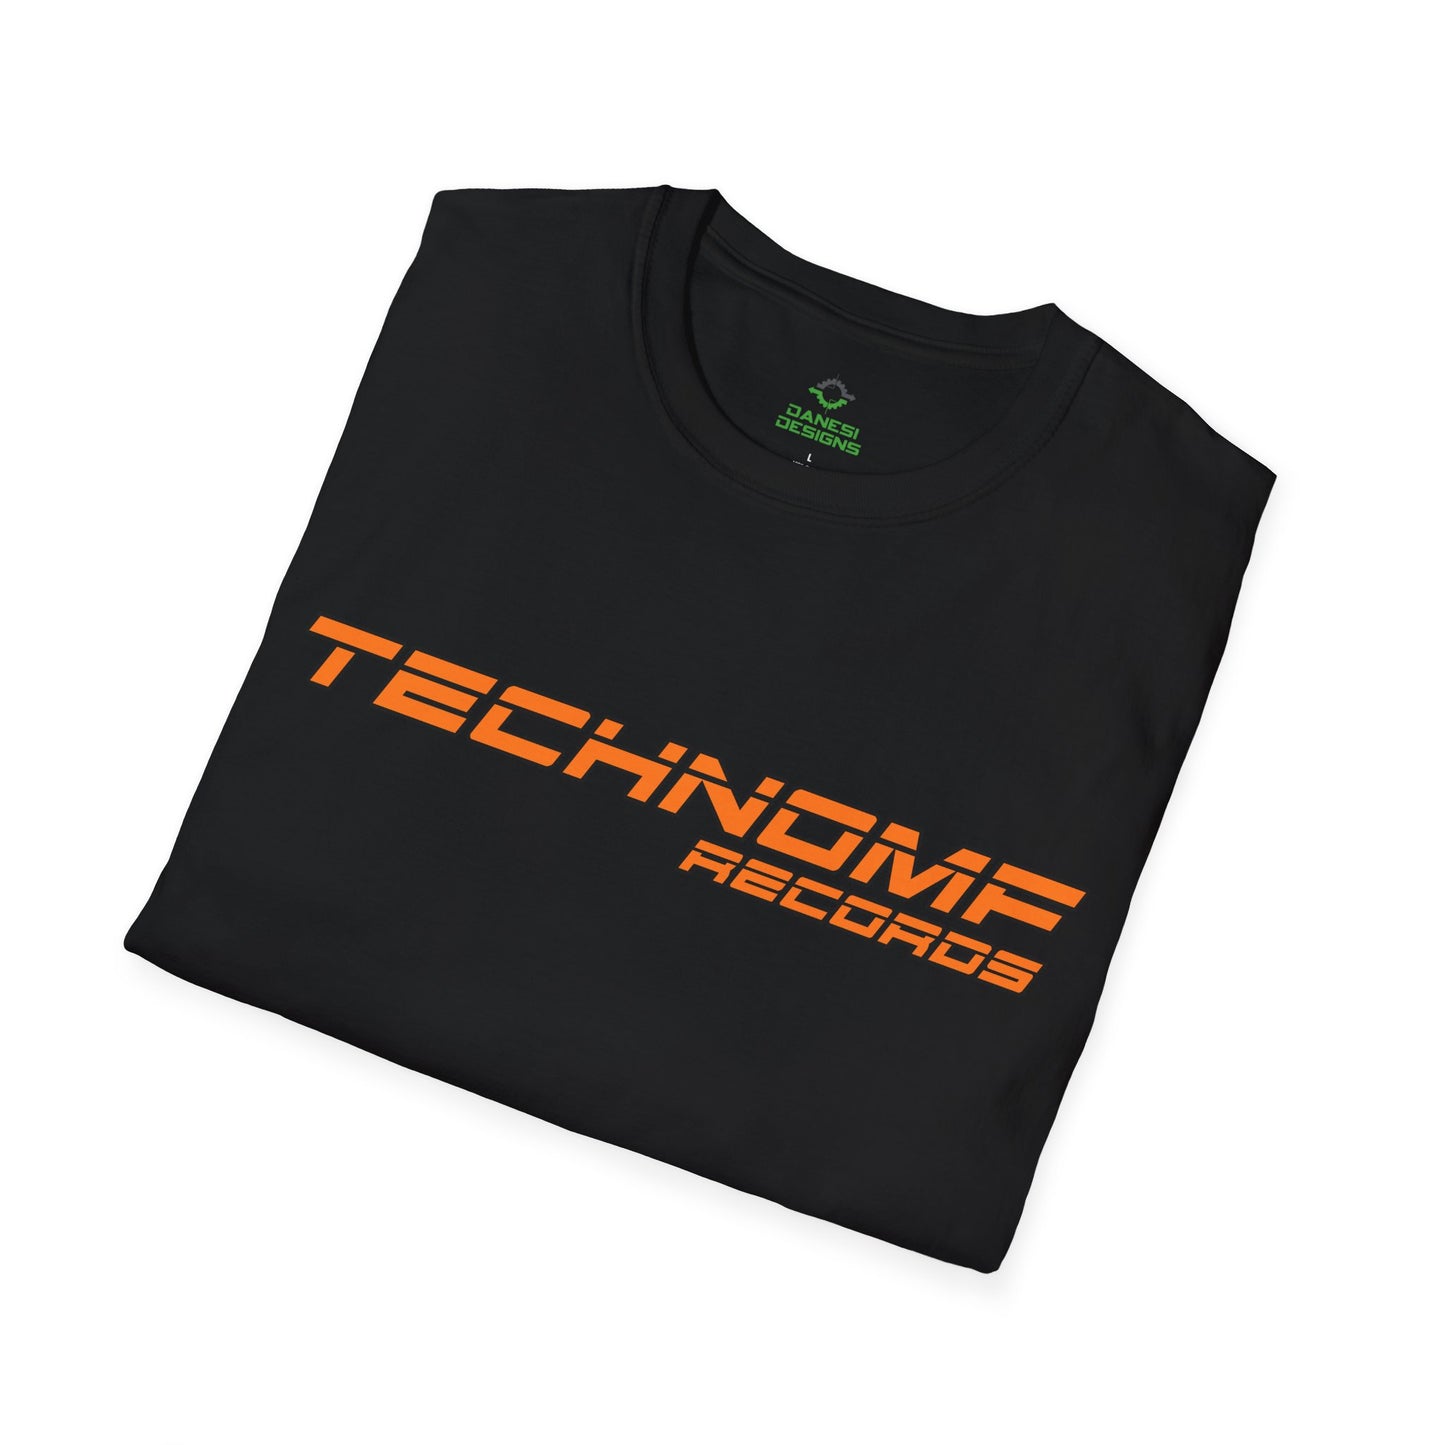 Premium TechnoMF Records T-Shirt